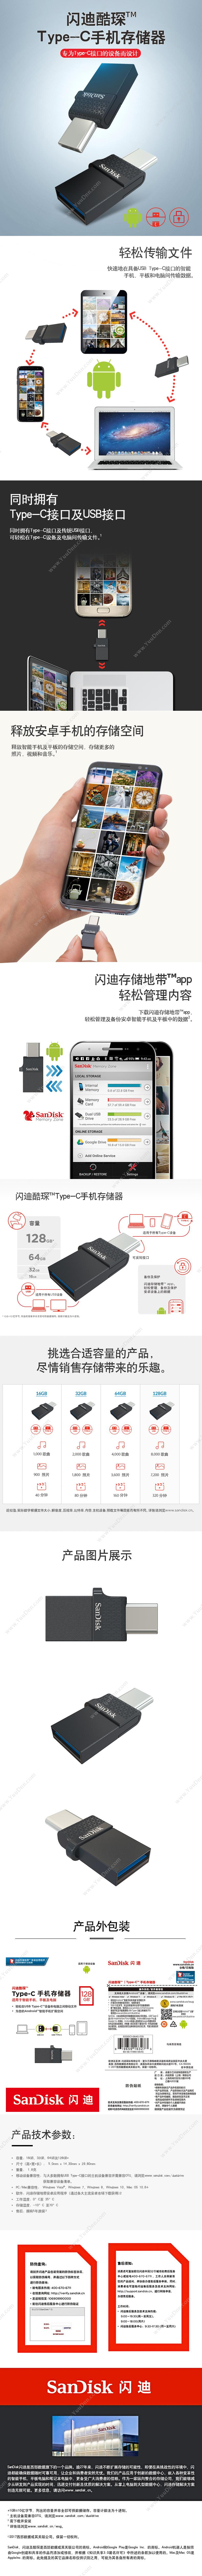 闪迪 Sandisk SDDDC1-128G-Z35 Type-C（黑） U盘